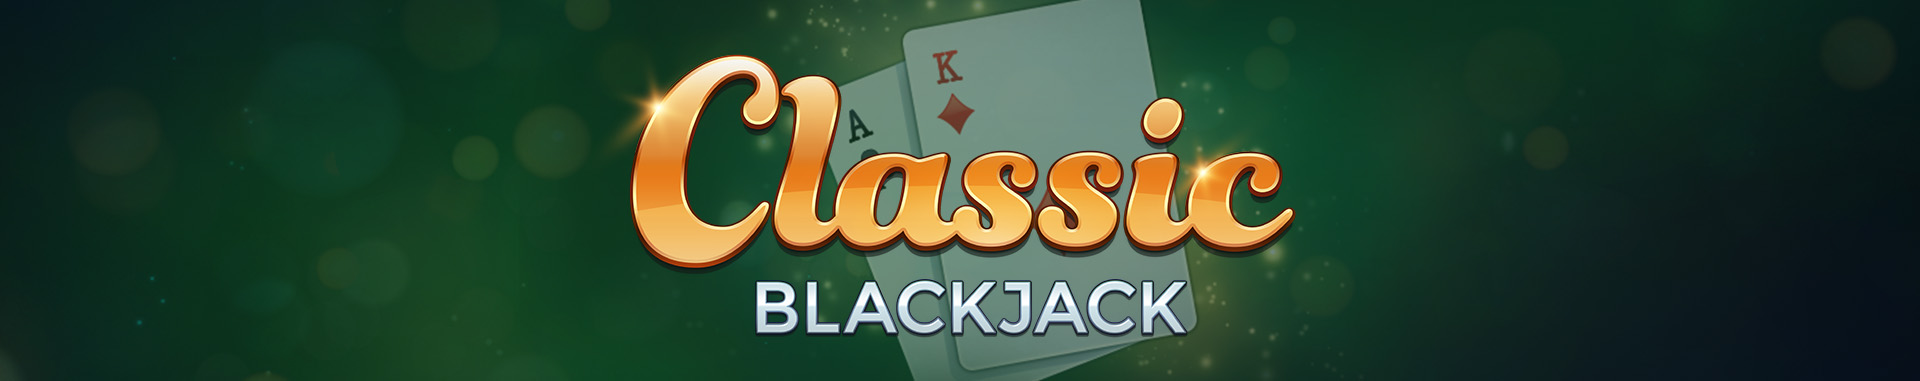 Classic Blackjack Six Deck de Microgaming